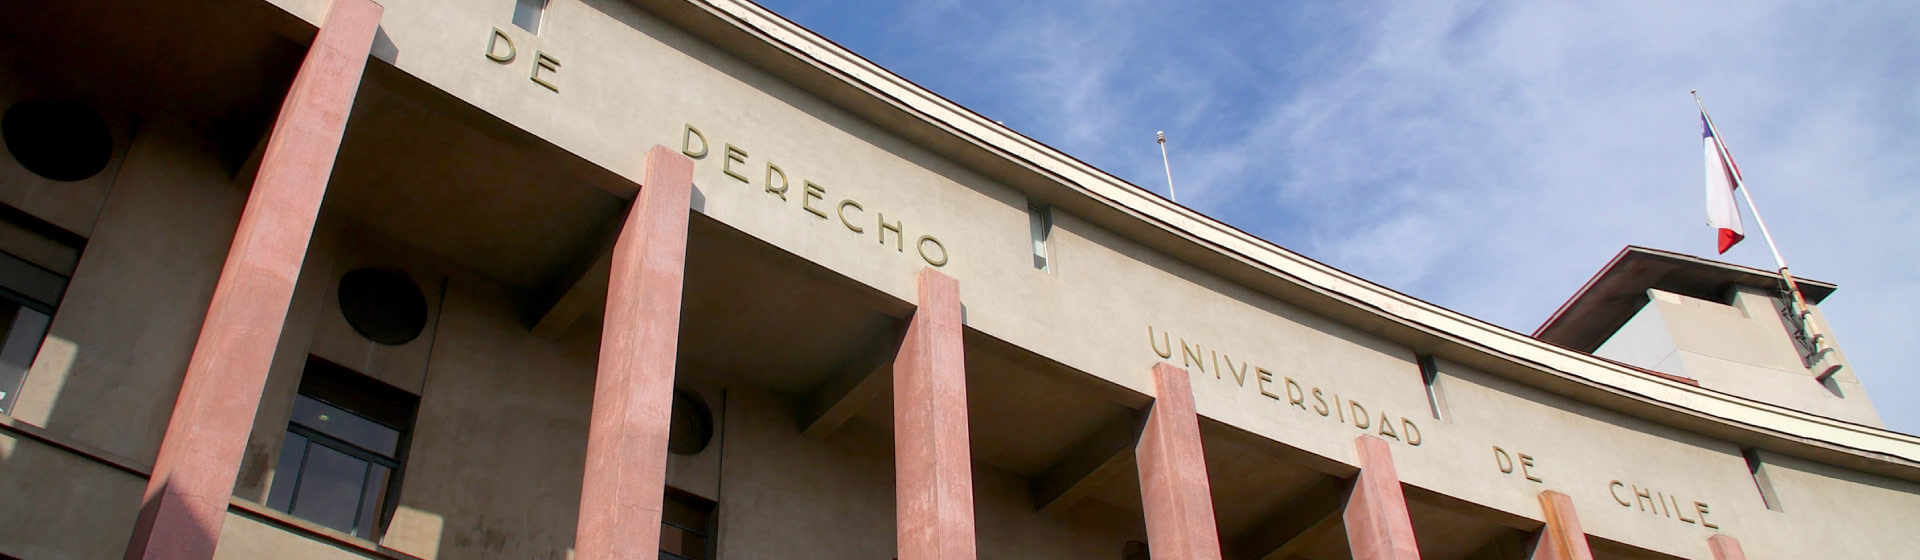 Convenio entre Universidad de Chile y Universidad de los Andes